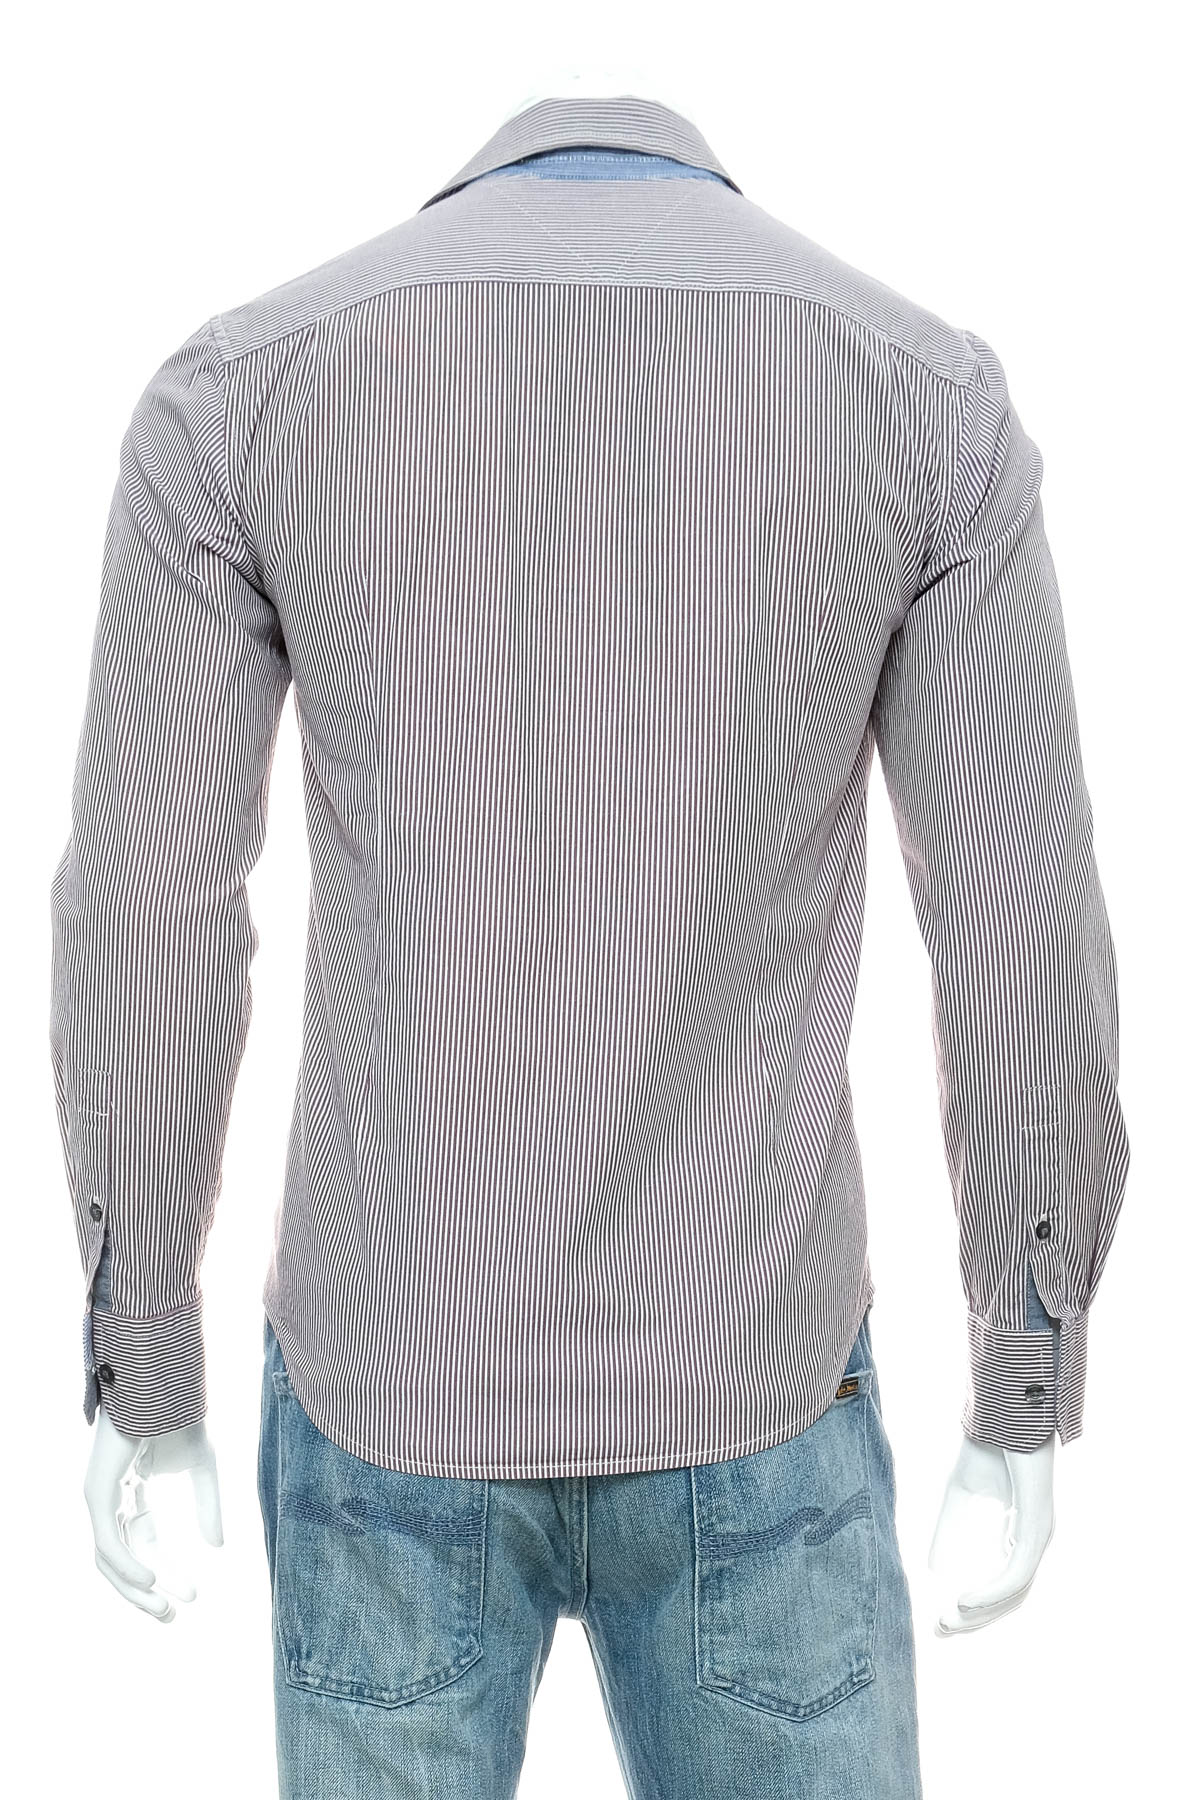 Ανδρικό πουκάμισο - HILFIGER DENIM - 1